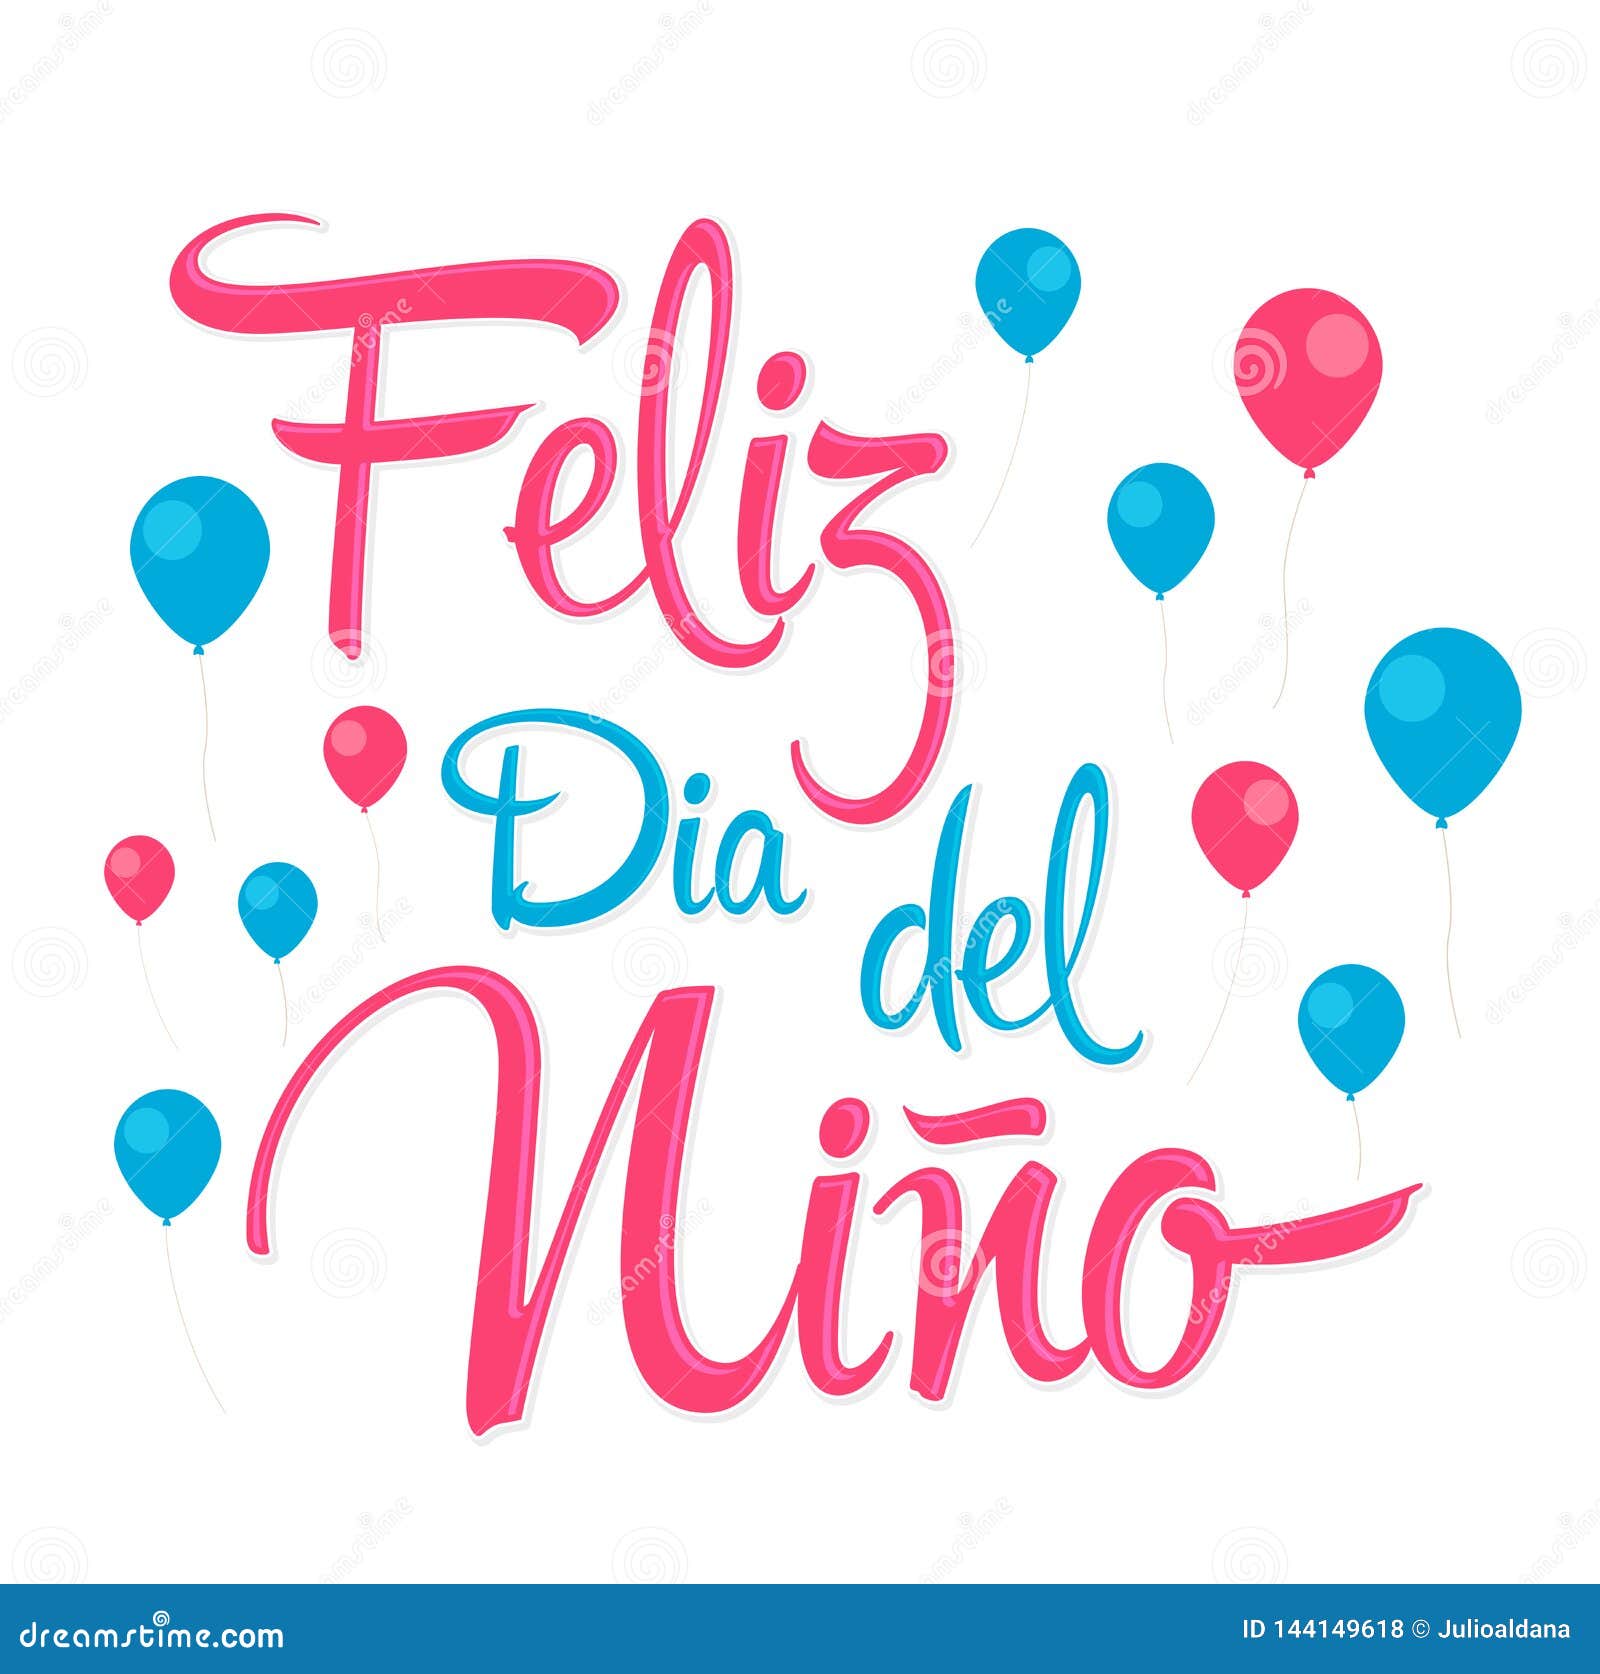 feliz dia del nino, happy children day spanish text,  